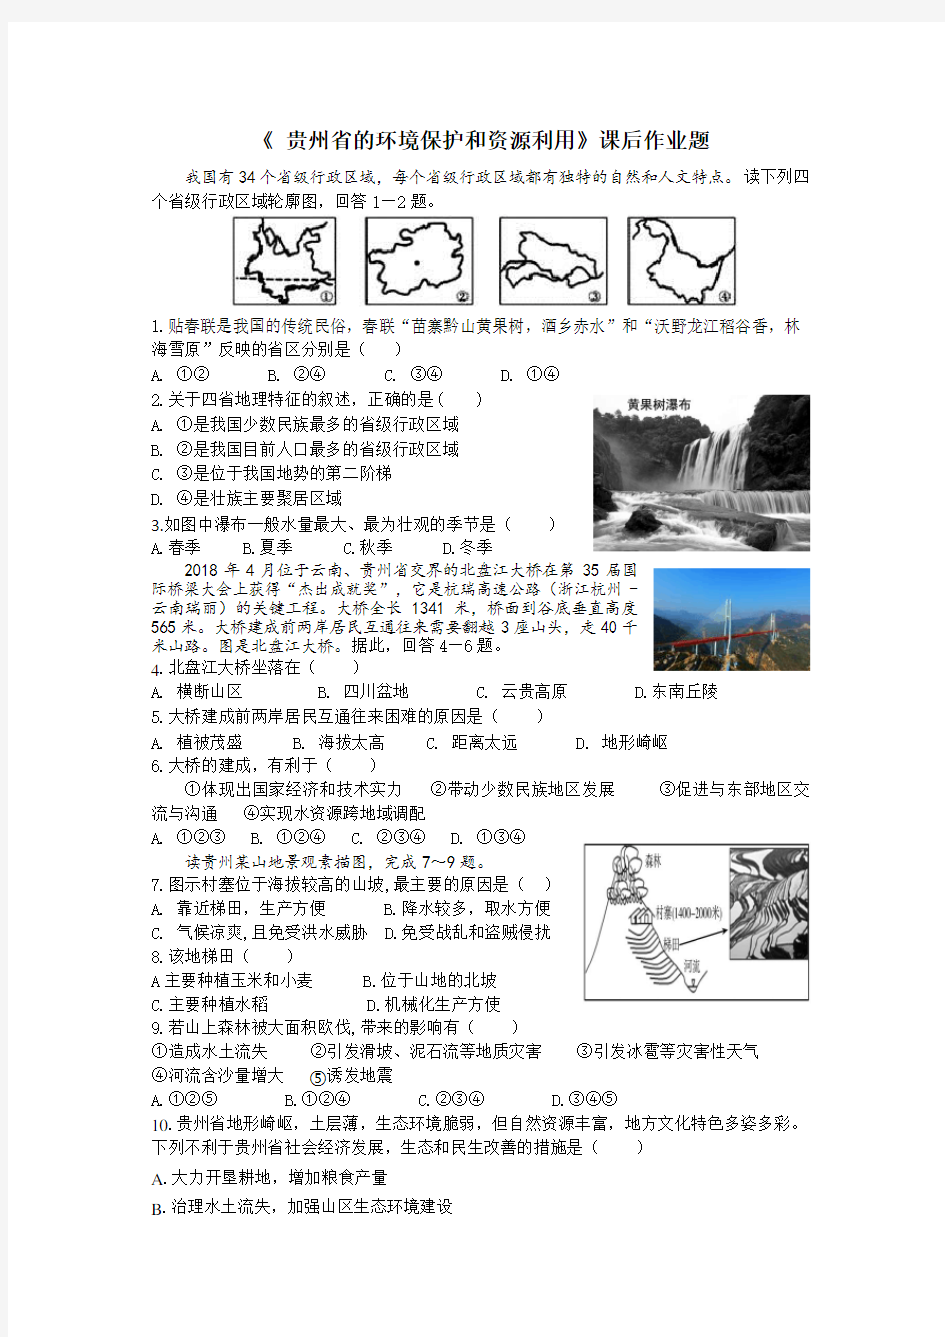 贵州省的环境保护和资源利用课后练习题(带答案)